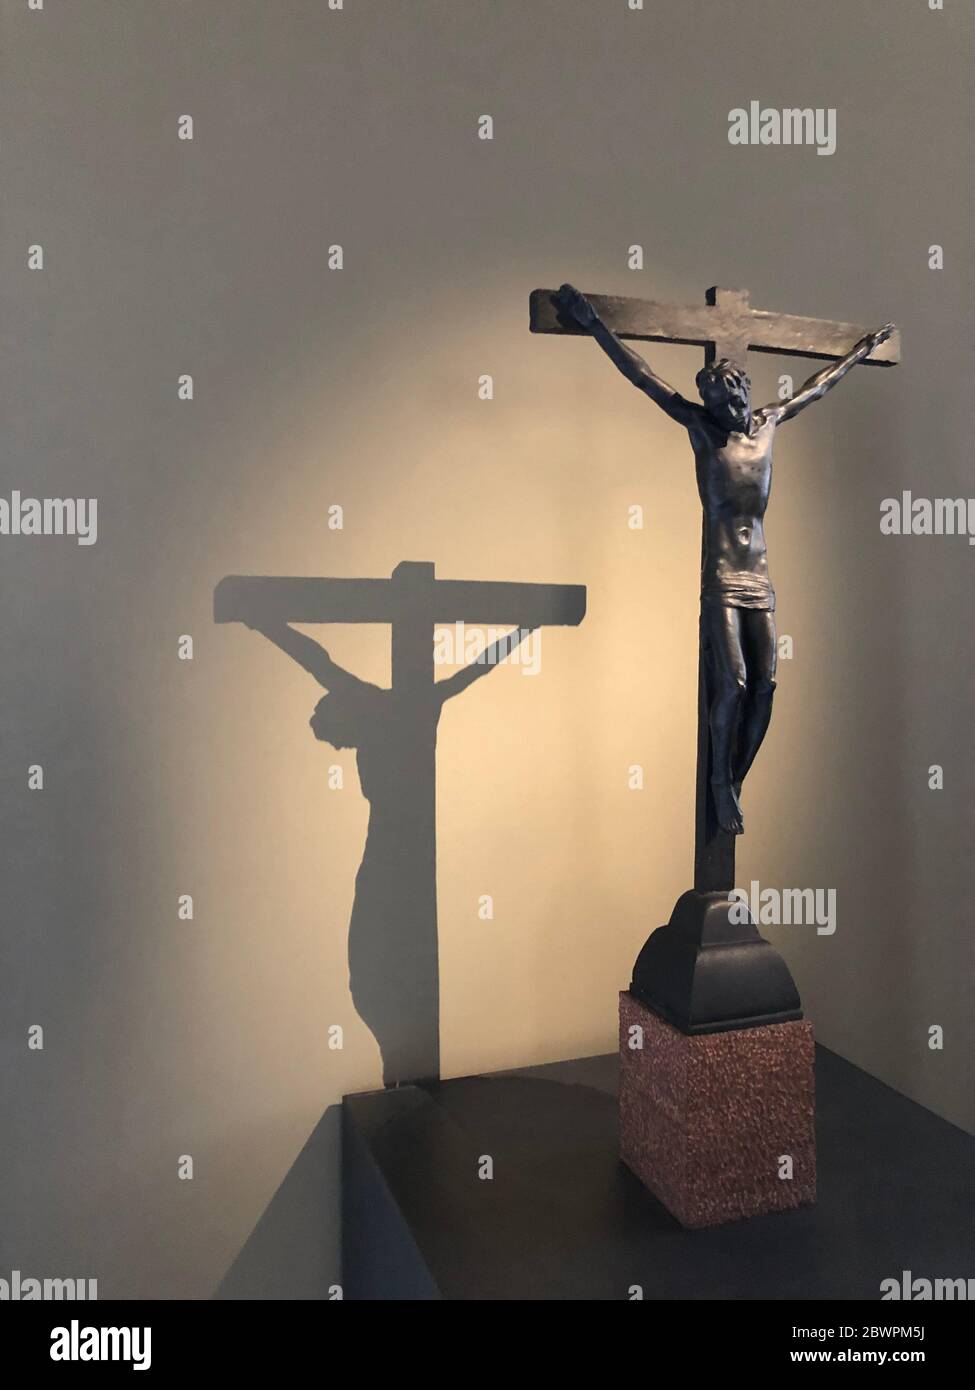 Città del Vaticano, 20 maggio 2019: Gesù sulla croce nei Musei Vaticani Foto Stock